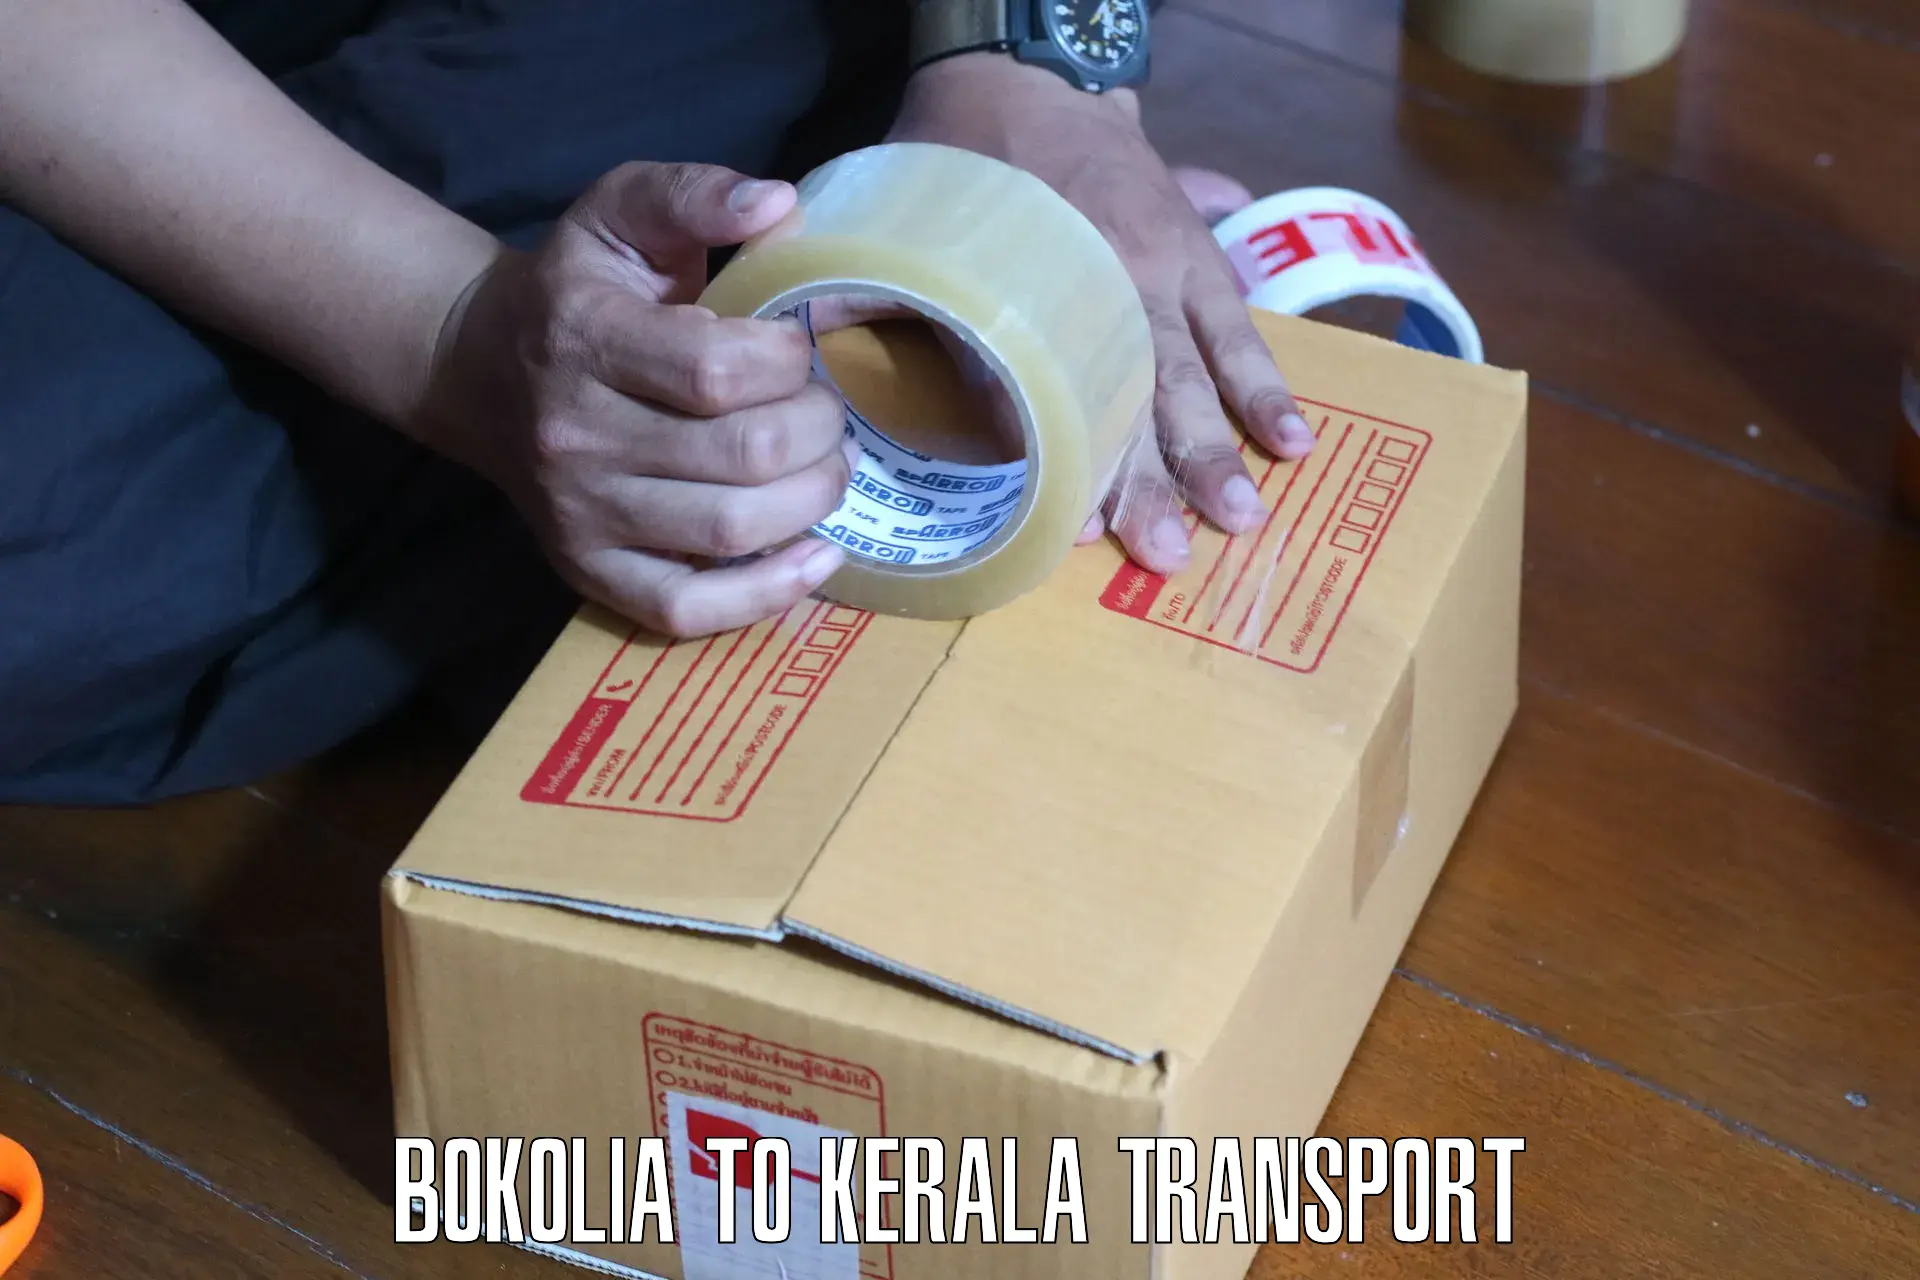 Intercity goods transport Bokolia to Ponnani